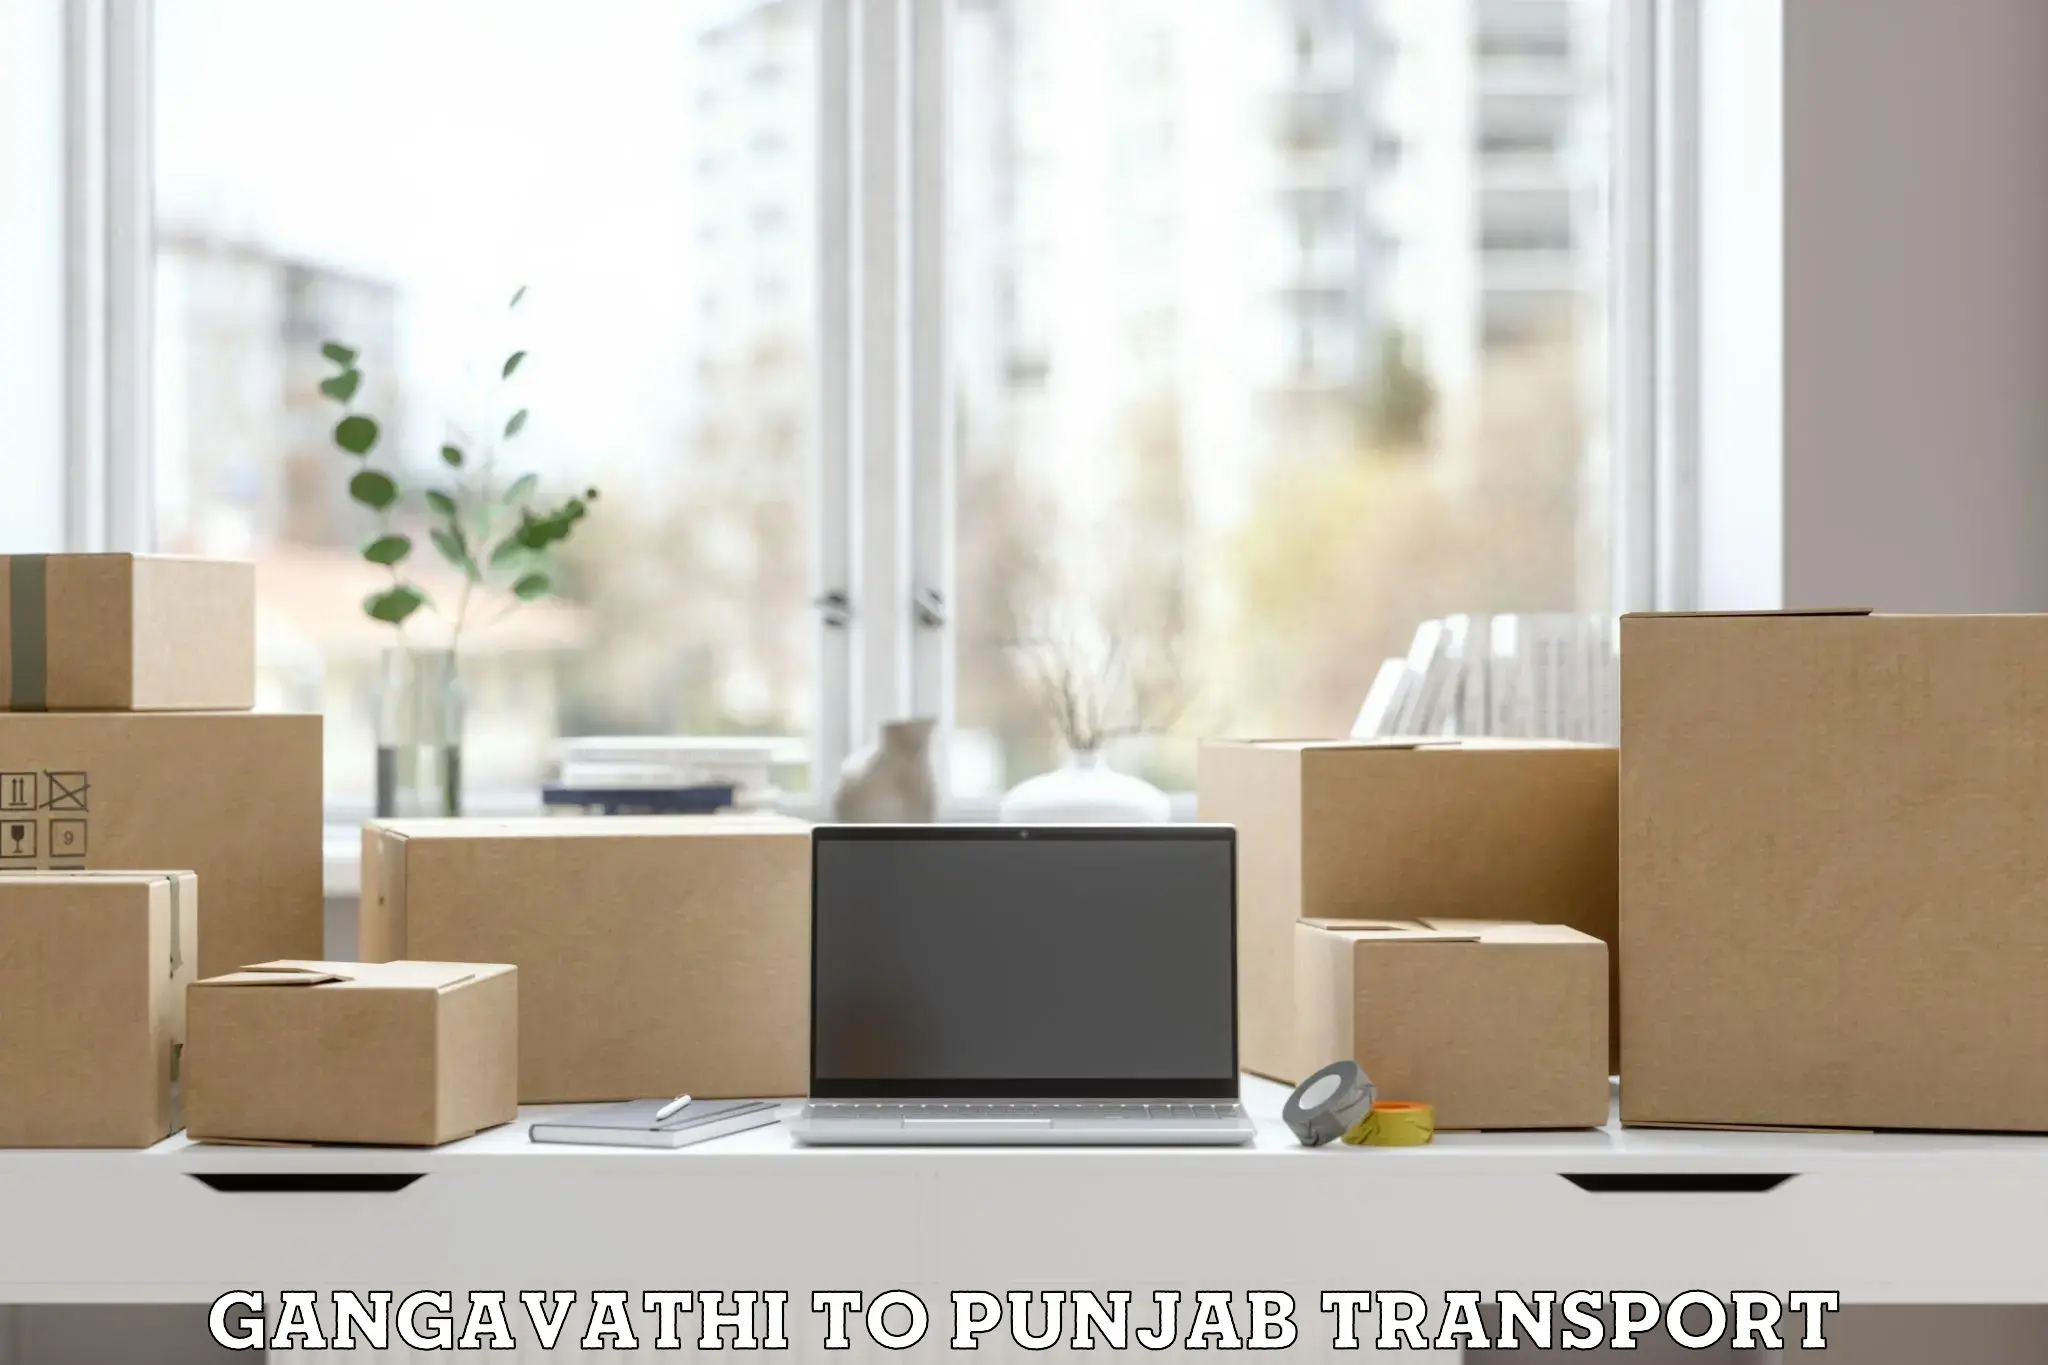 Furniture transport service Gangavathi to Central University of Punjab Bathinda